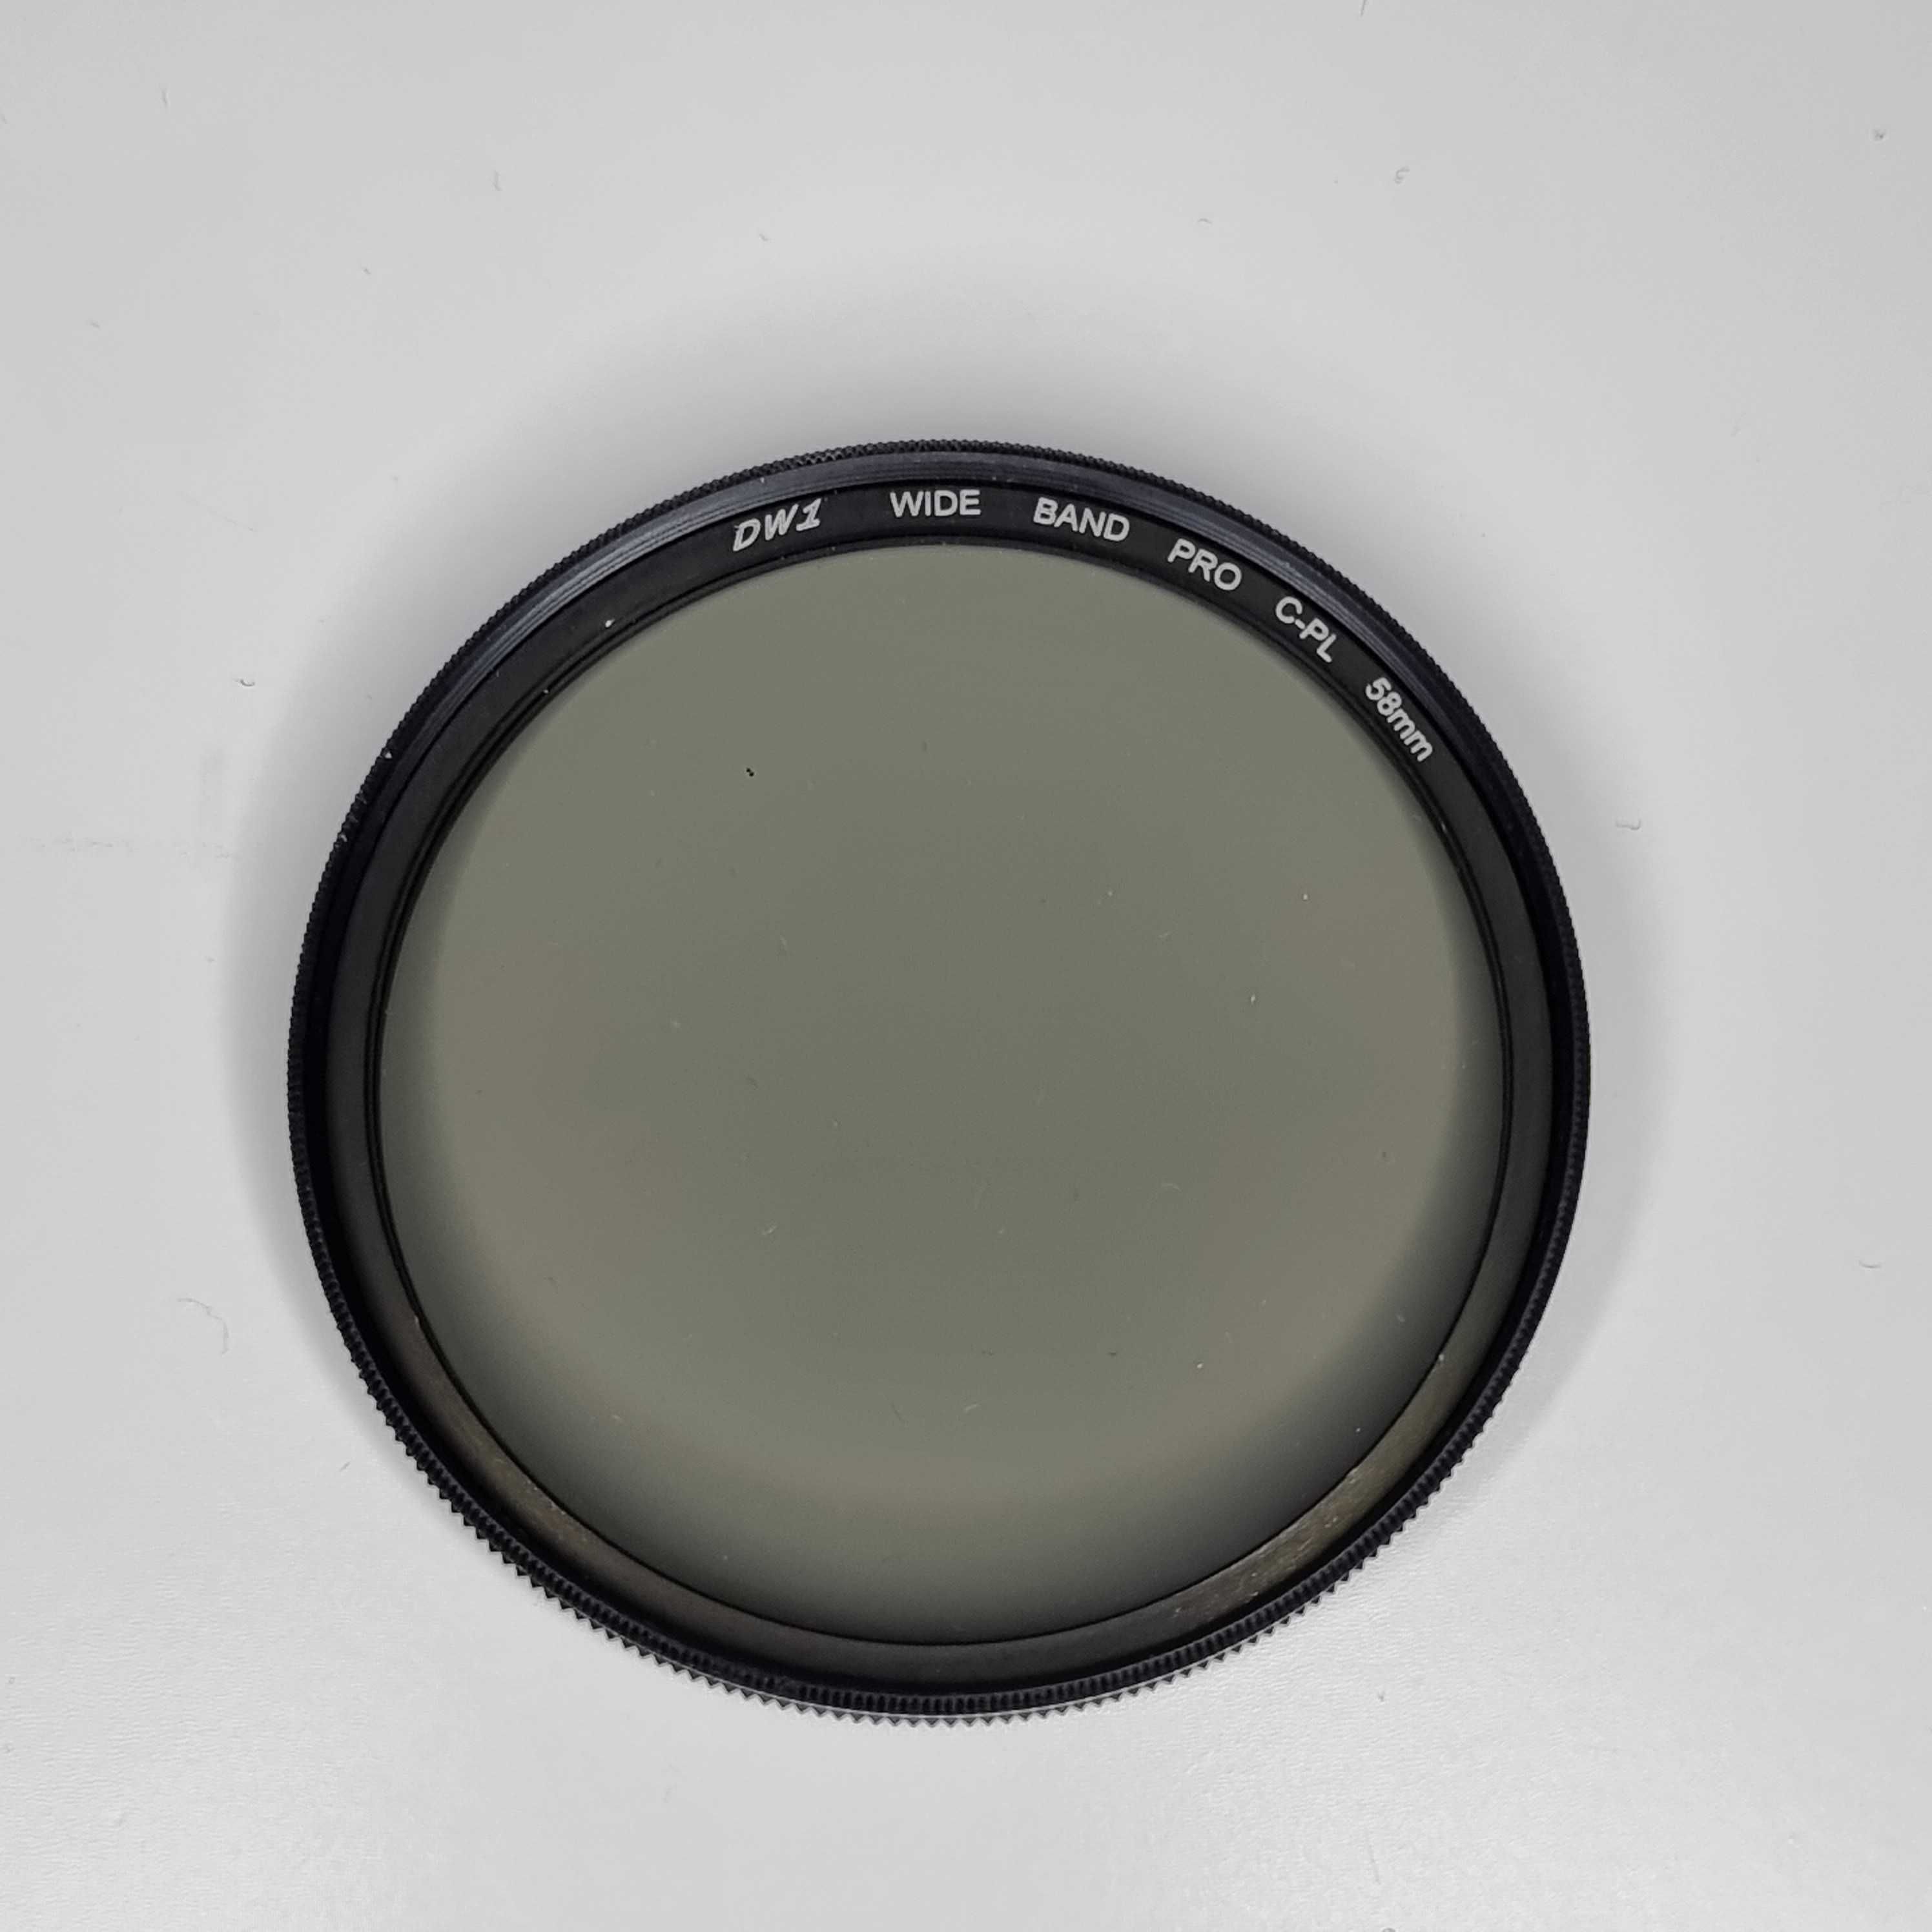 Filtru de polarizare circulara CPL de 58mm Zomei